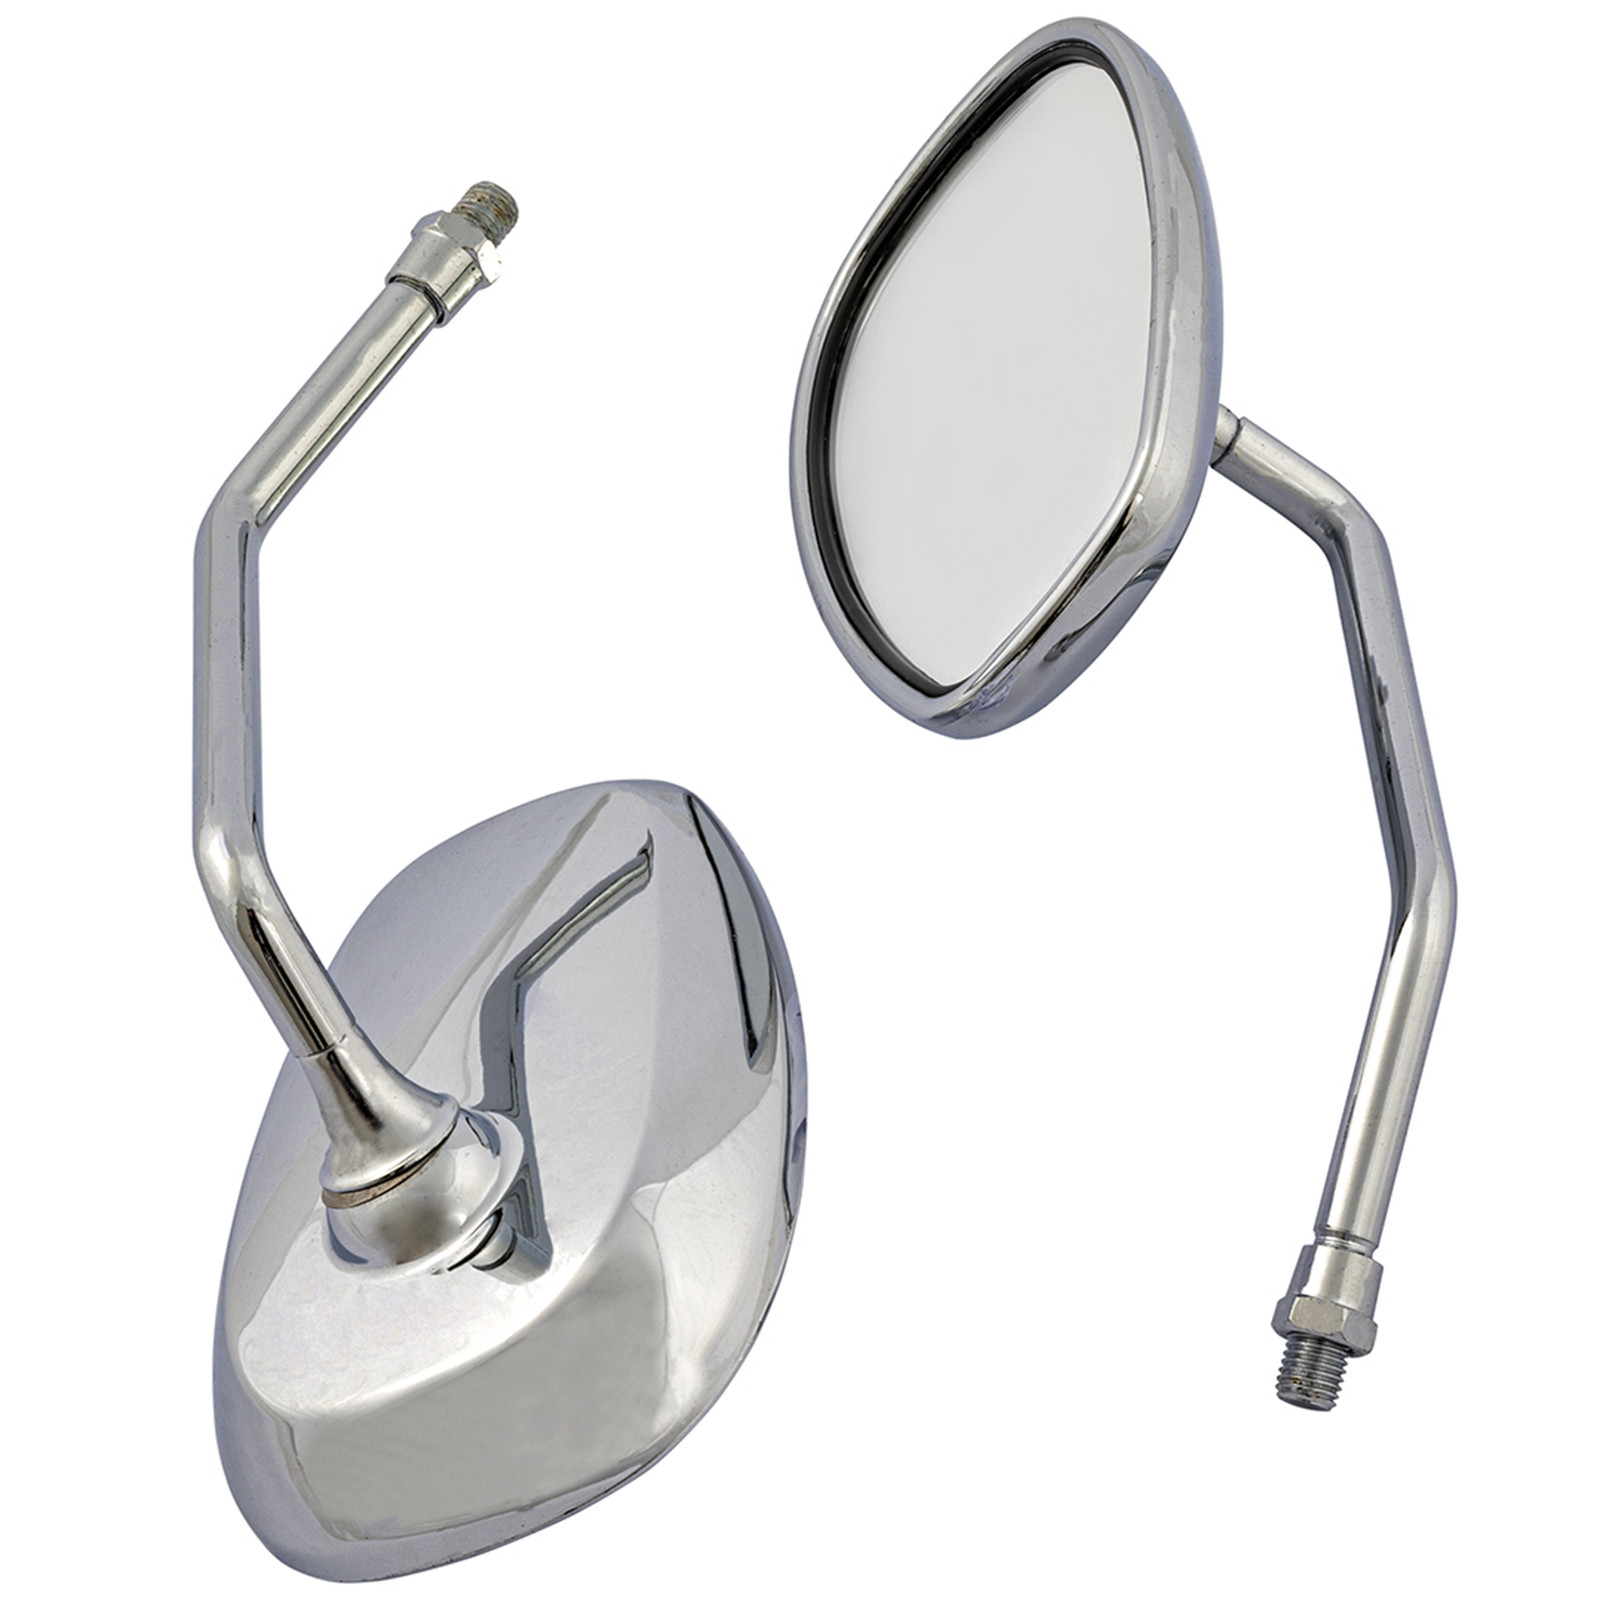 Abbigliamento Moto e Accessori - Coppia Specchietti Moto Custom Retrovisori  Specchi Cromati Grandi M10